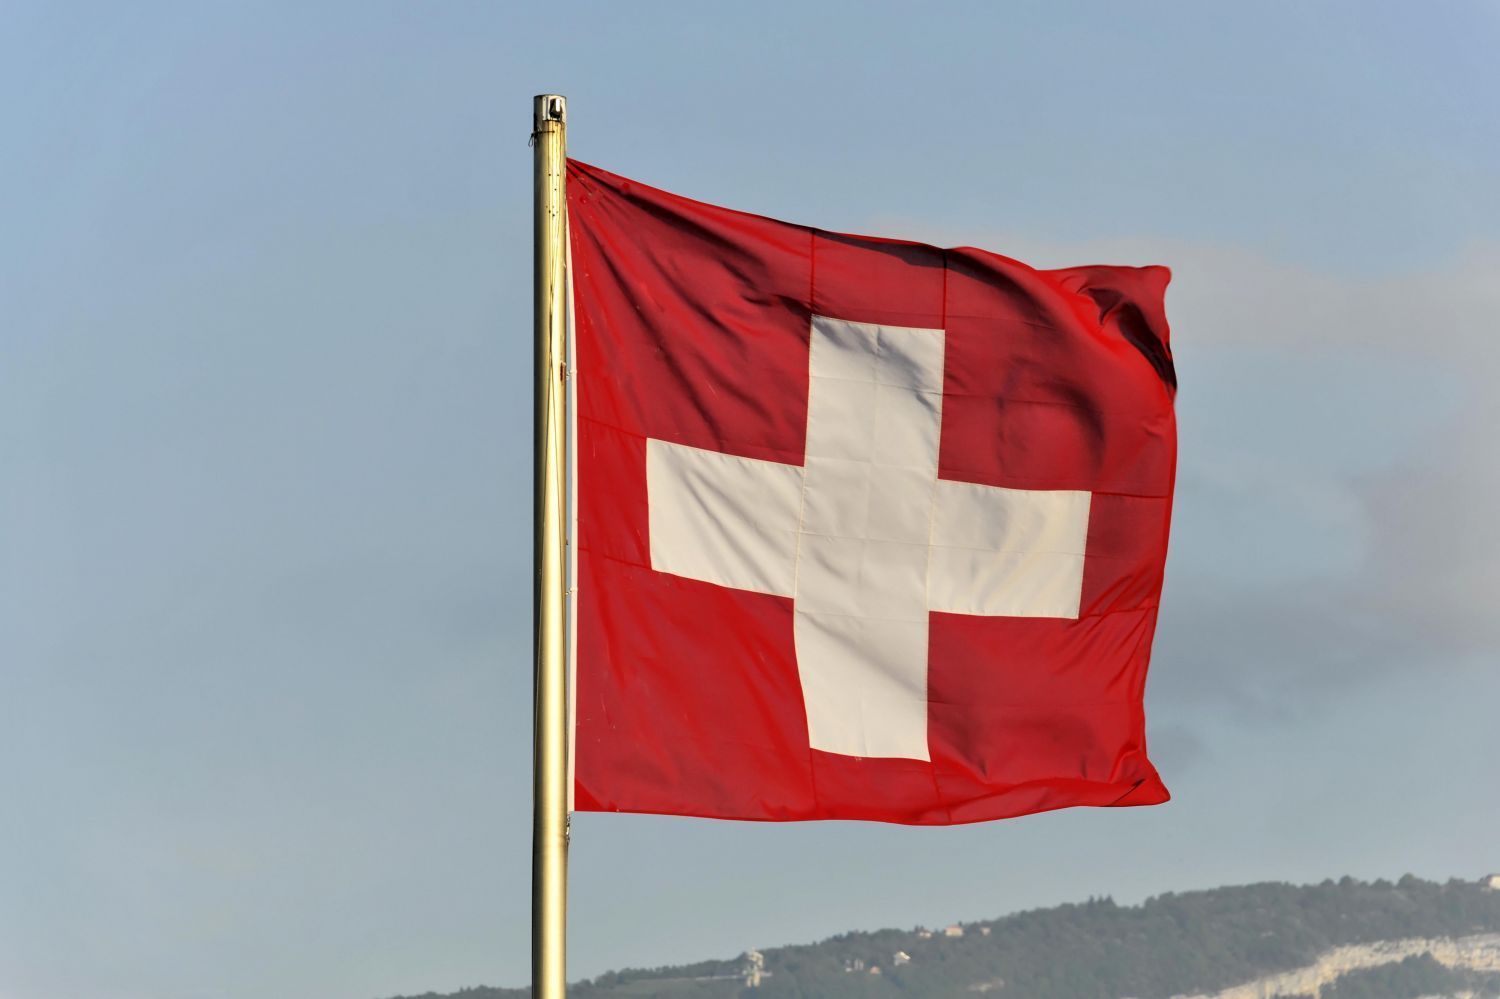 Государственный флаг Швейцарии